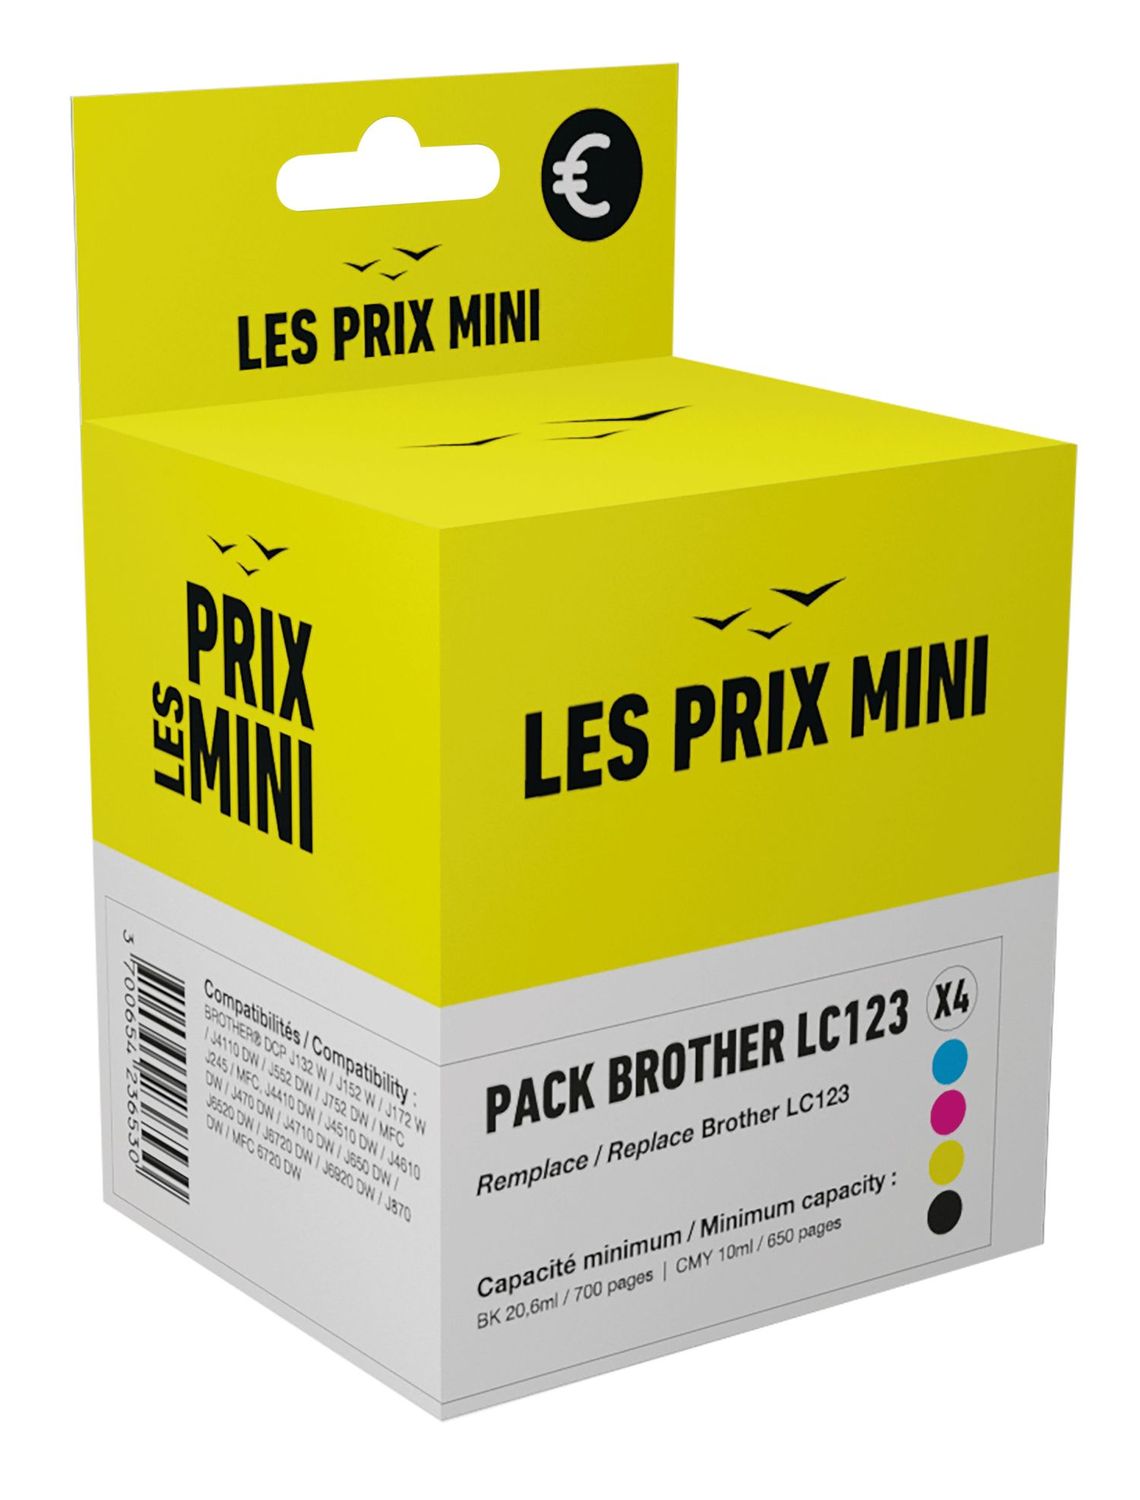 Cartouche Brother LC123 Pack pour Imprimantes jet D'encre